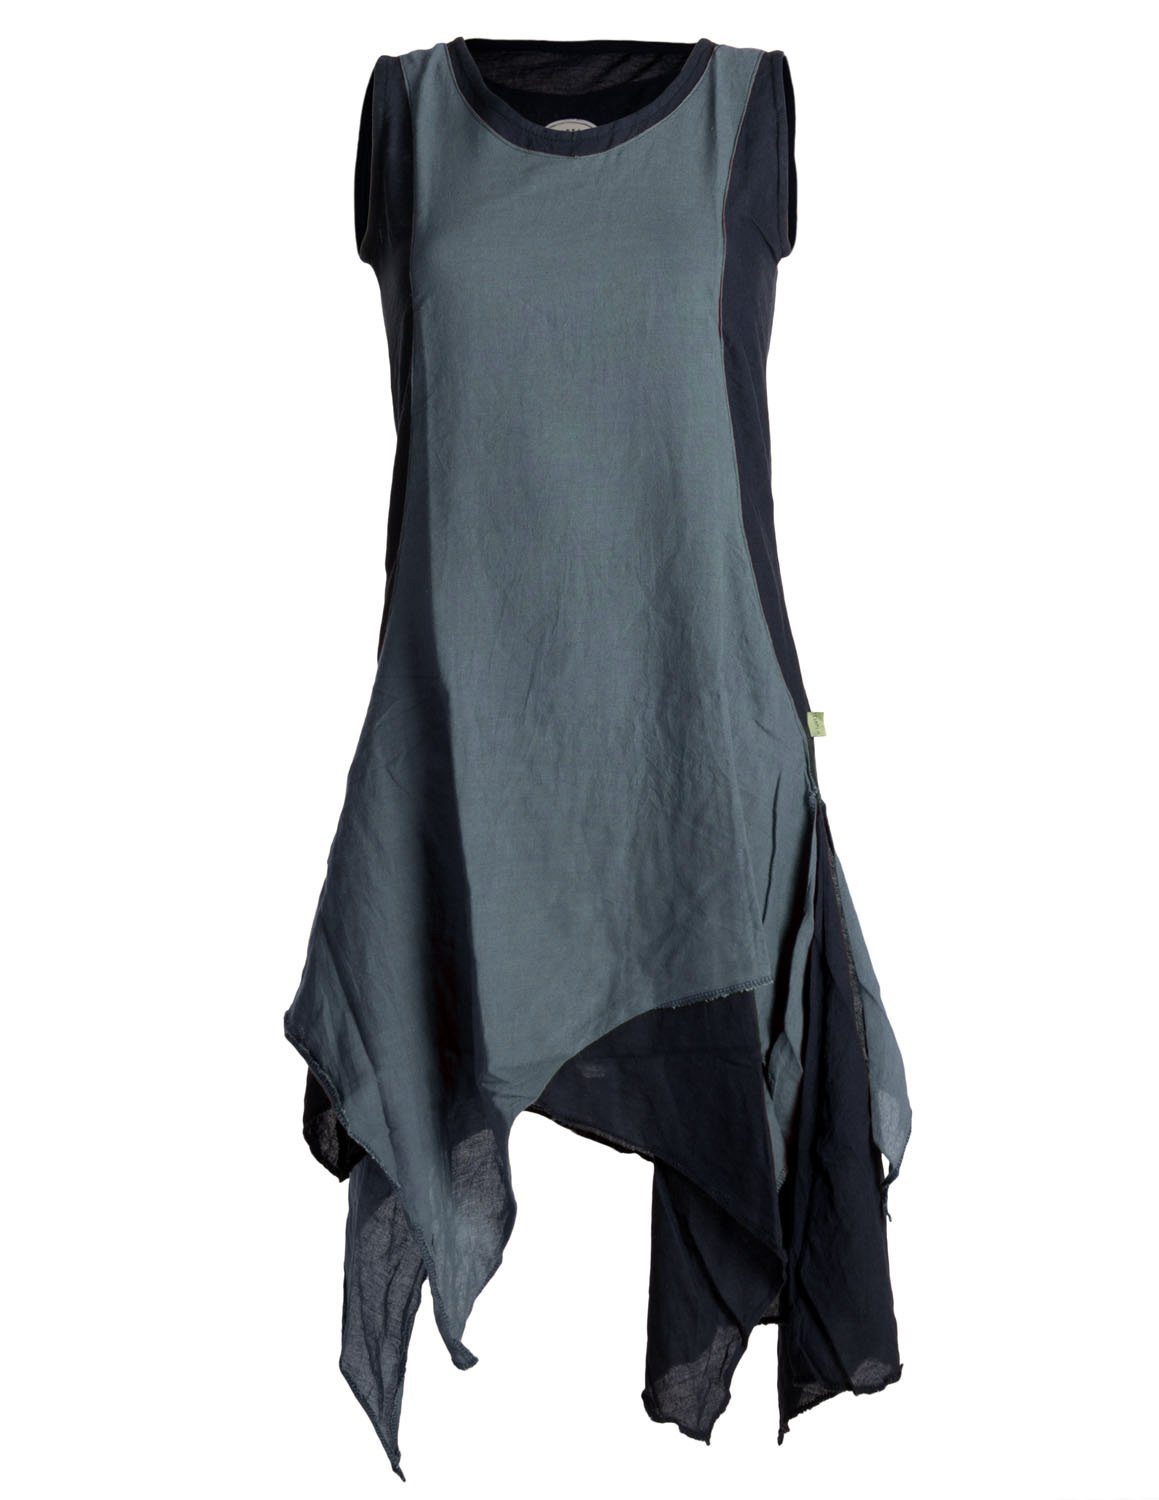 Vishes Sommerkleid Ärmelloses Lagenlook Kleid handgewebte Baumwolle Goa, Boho, Hippie Style schwarz-grau